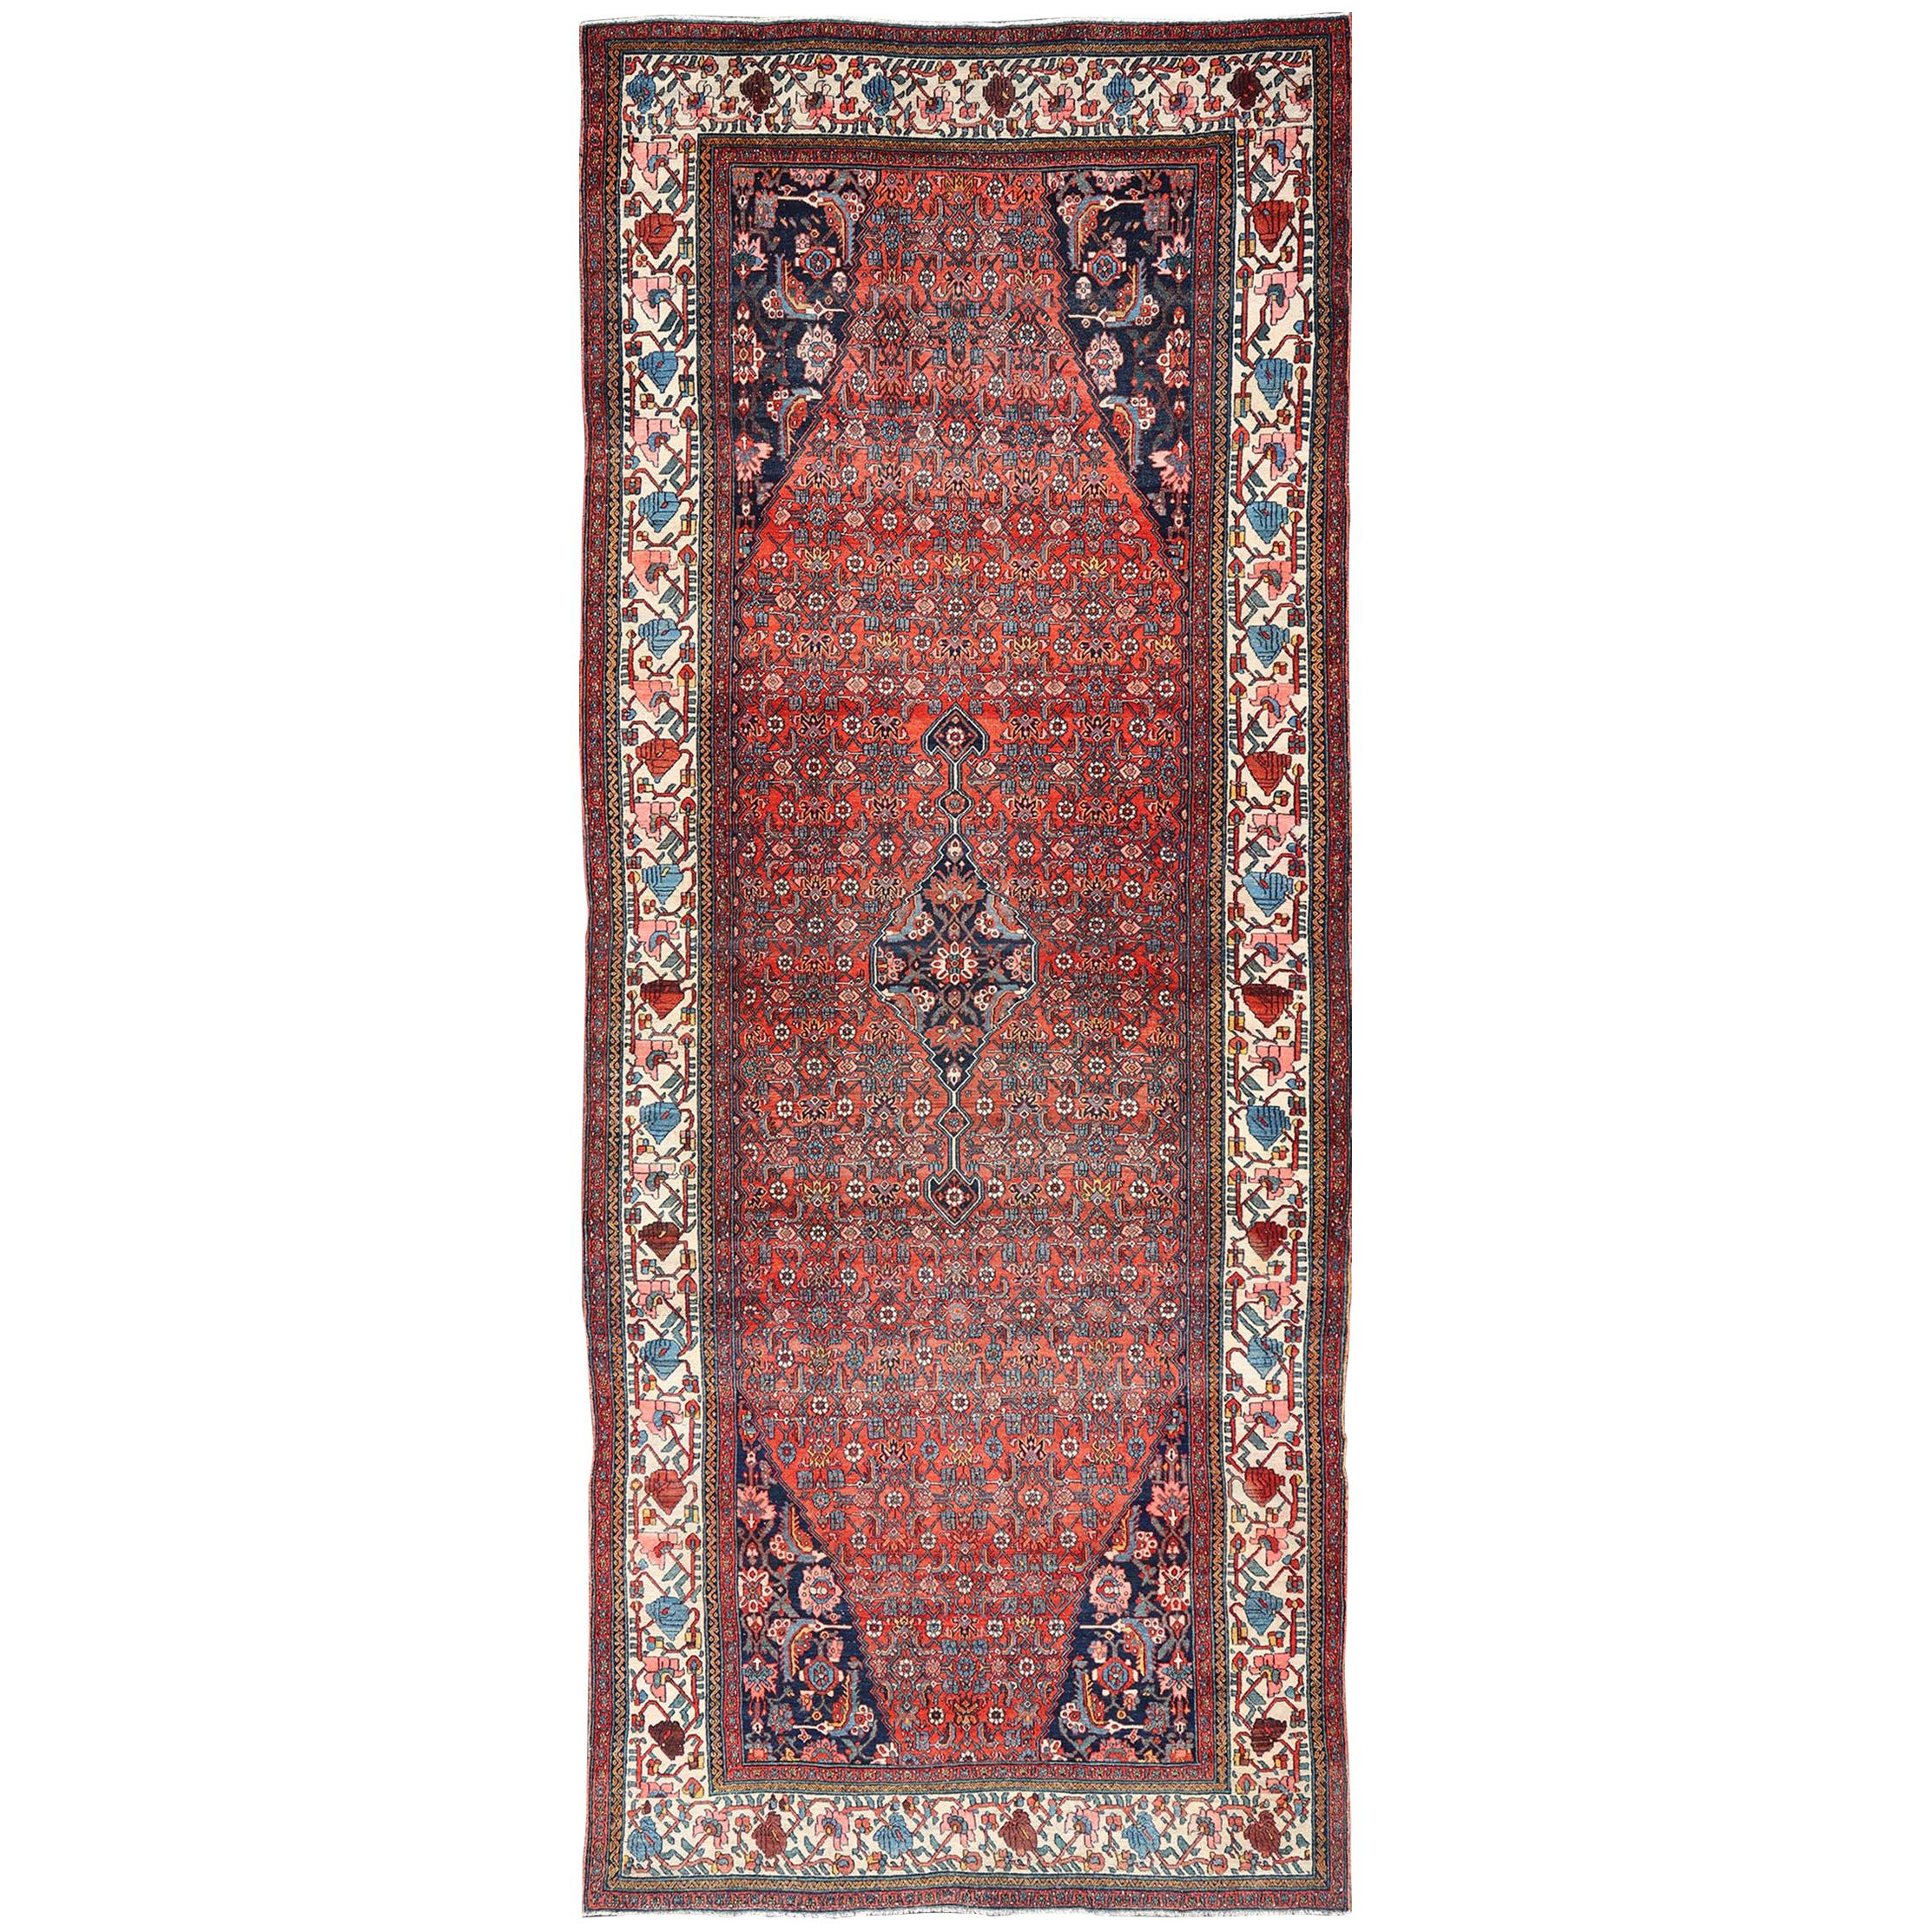 Fein gewebter großer antiker persischer Galerieteppich in sattem Blau und Ziegelrot